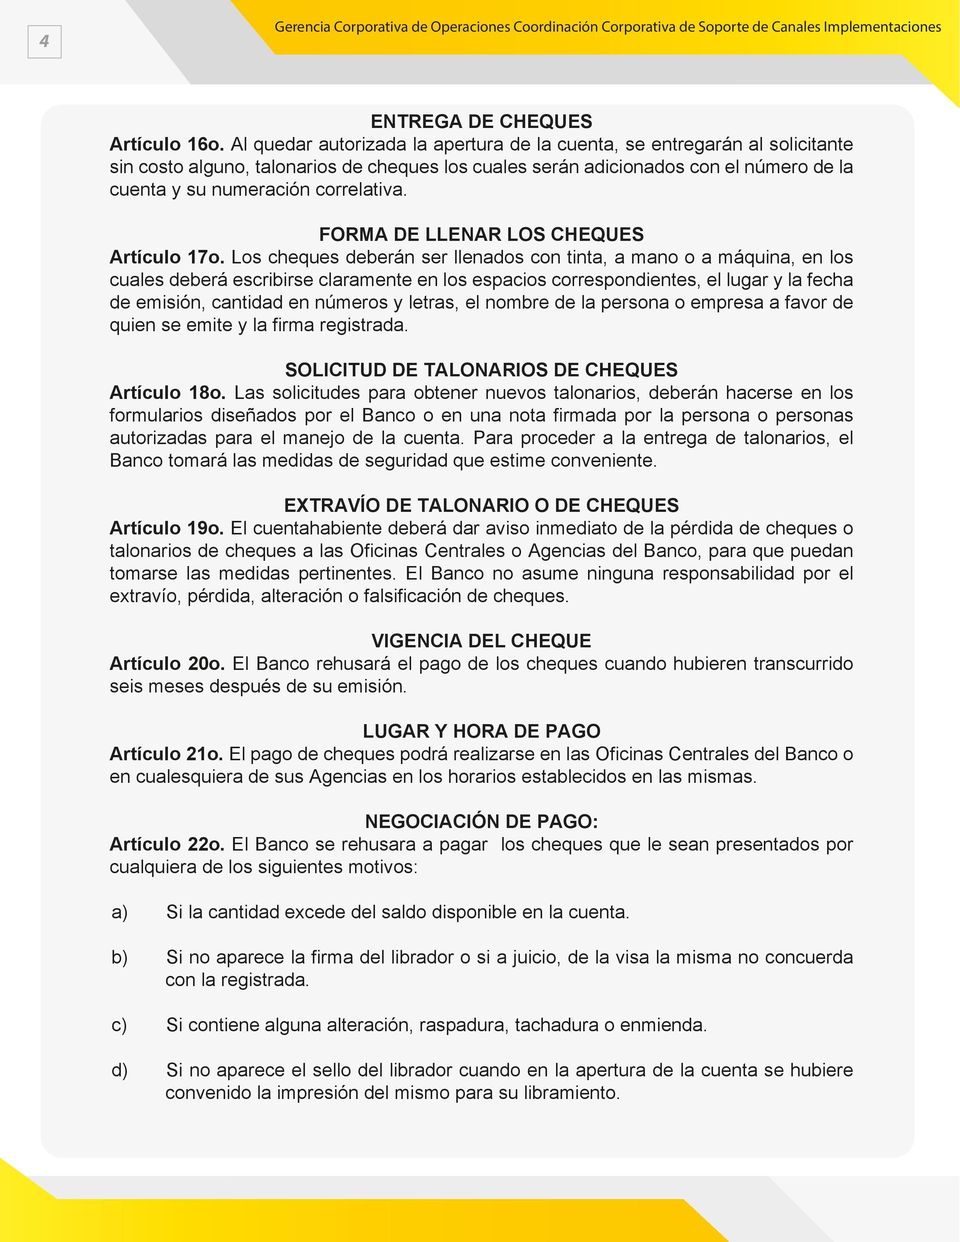 FORMA DE LLENAR LOS CHEQUES Artículo 17o.